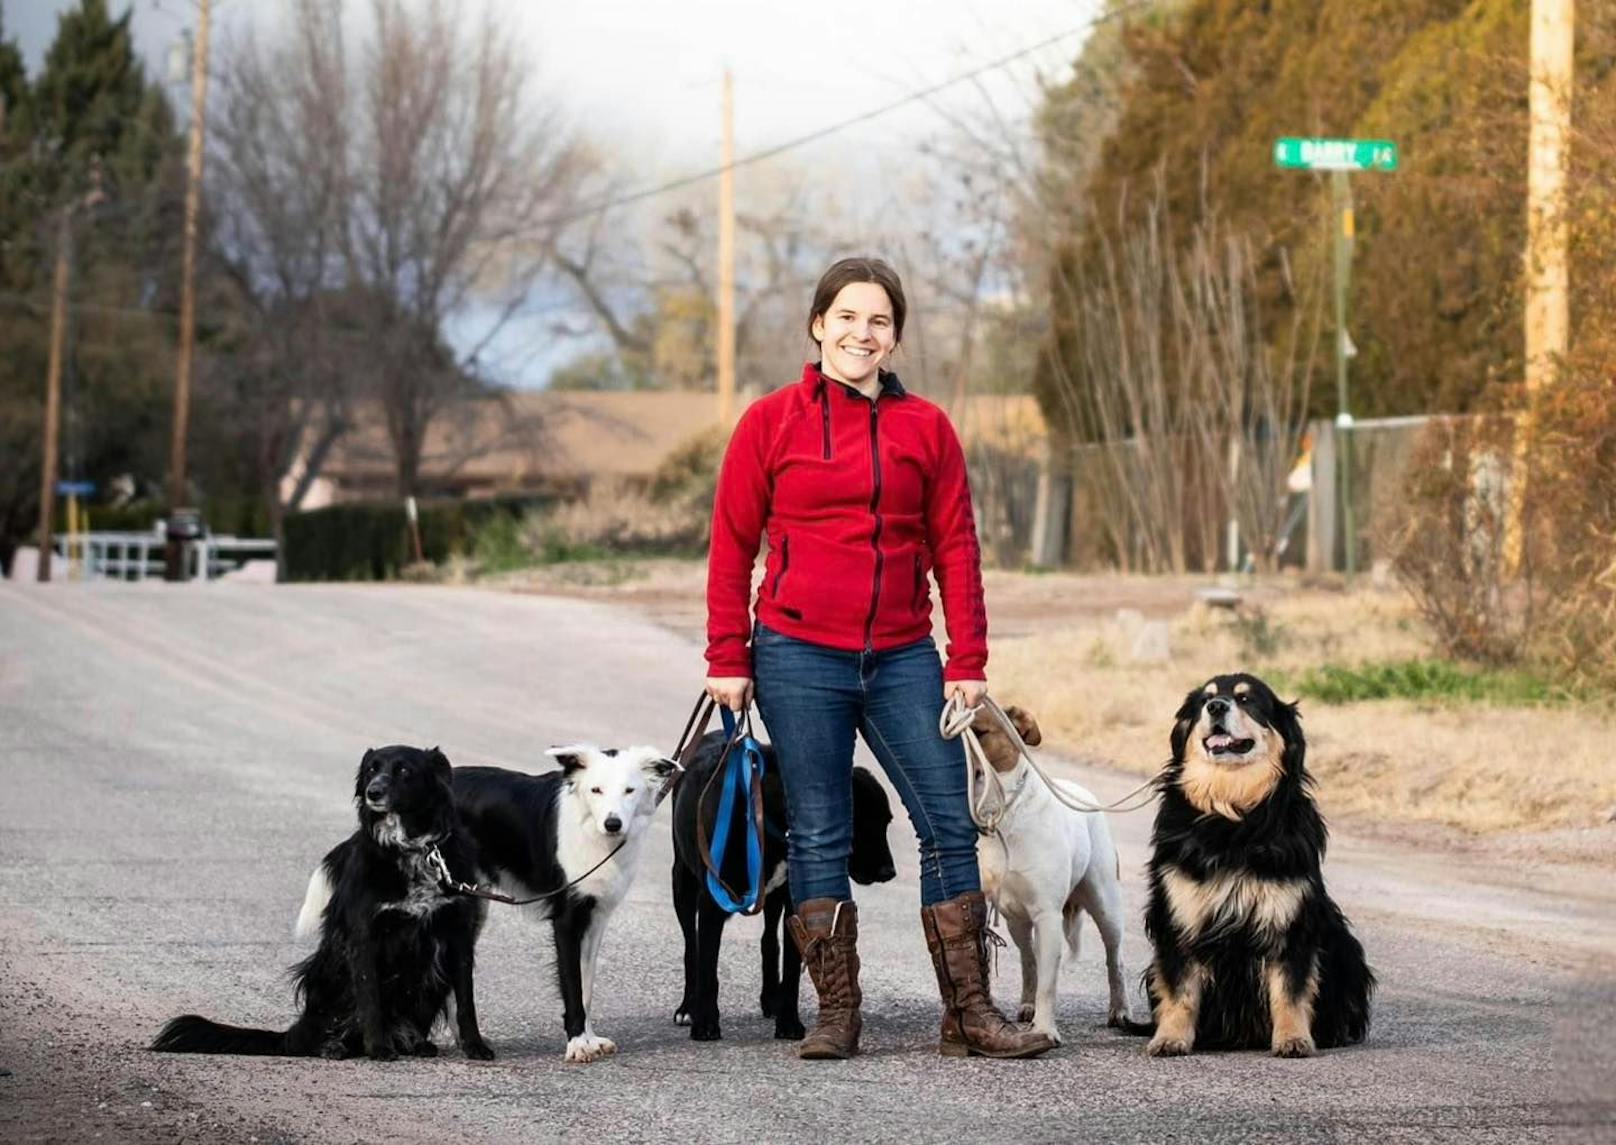 Sarah Fink lebt seit ein paar Jahren auf der Kanalinsel Sark, forscht zum Thema Straßenhunde und ist vor allem für ihre Trainings mit Problemhunden bekannt.